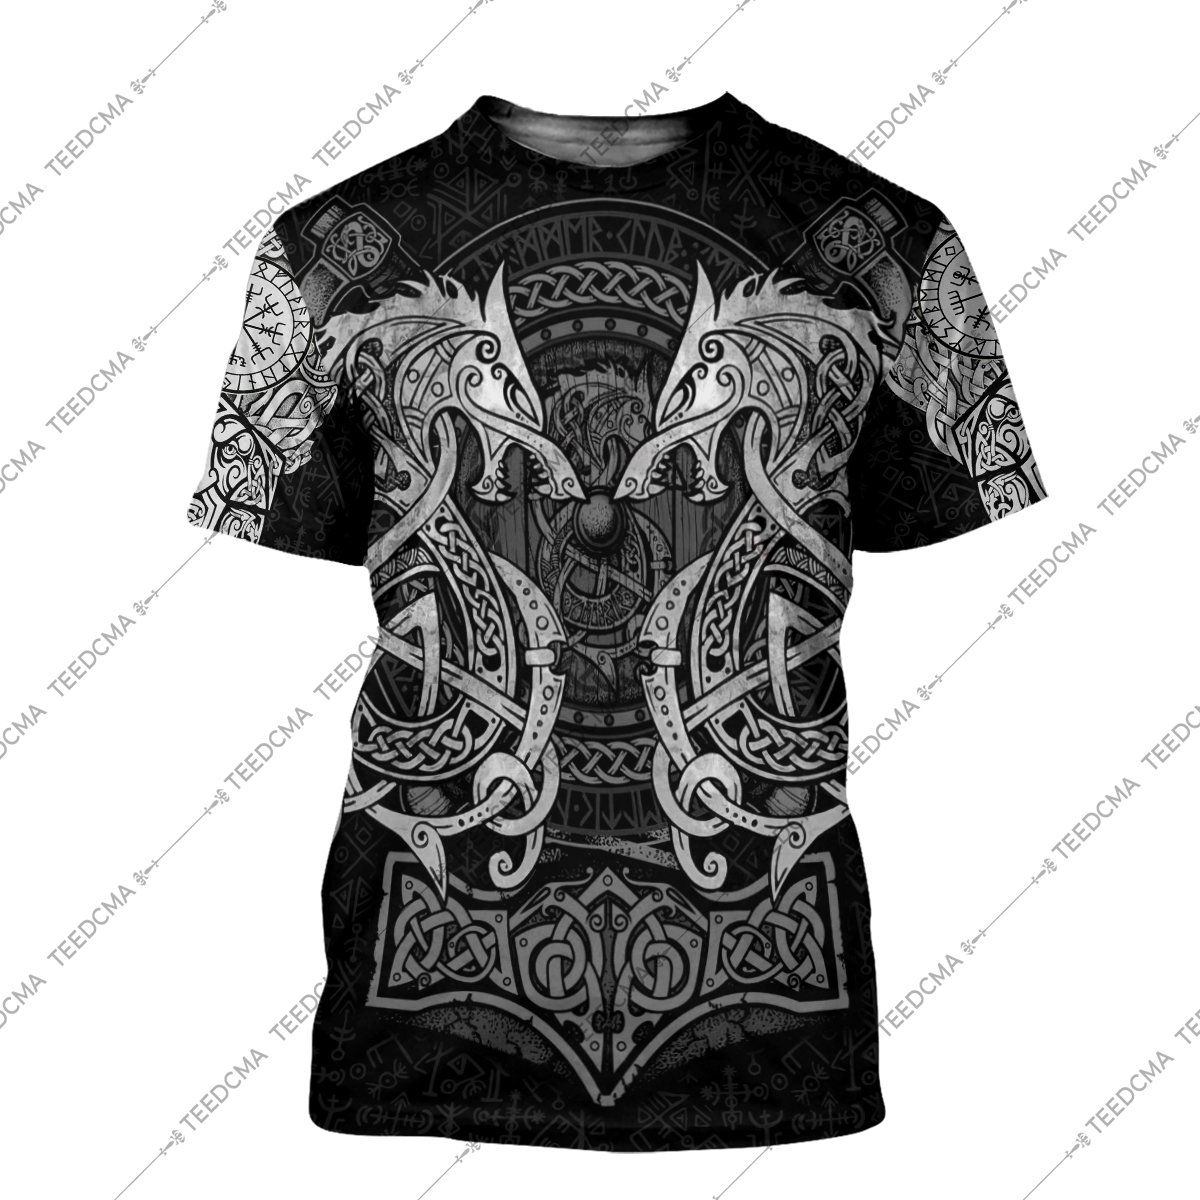 fenrir viking tattoo style all over printed tshirt